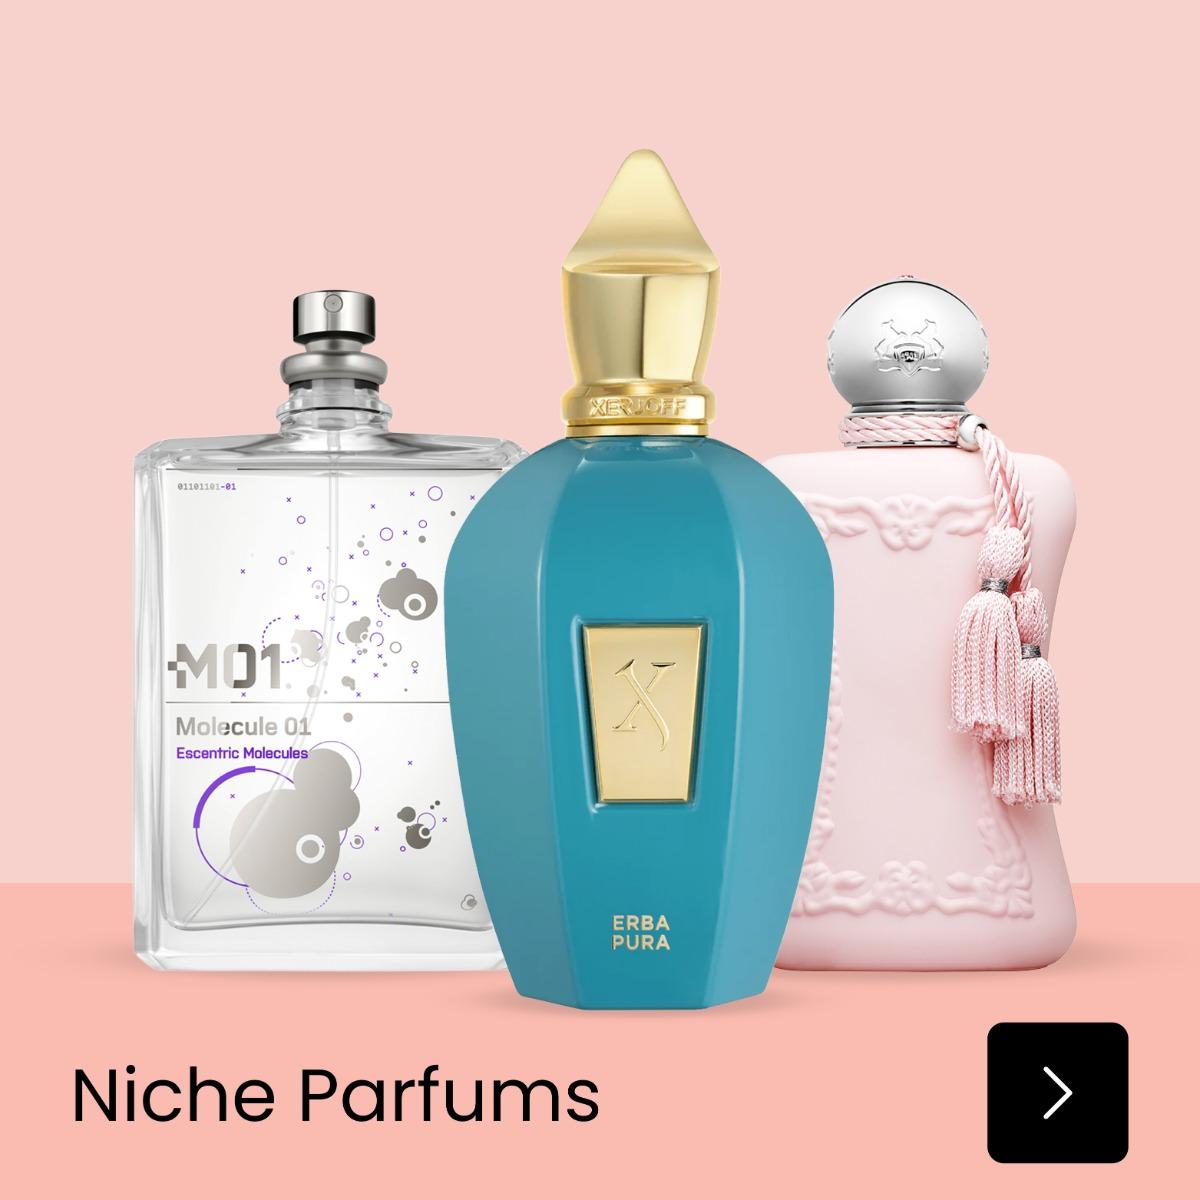 Niche parfums